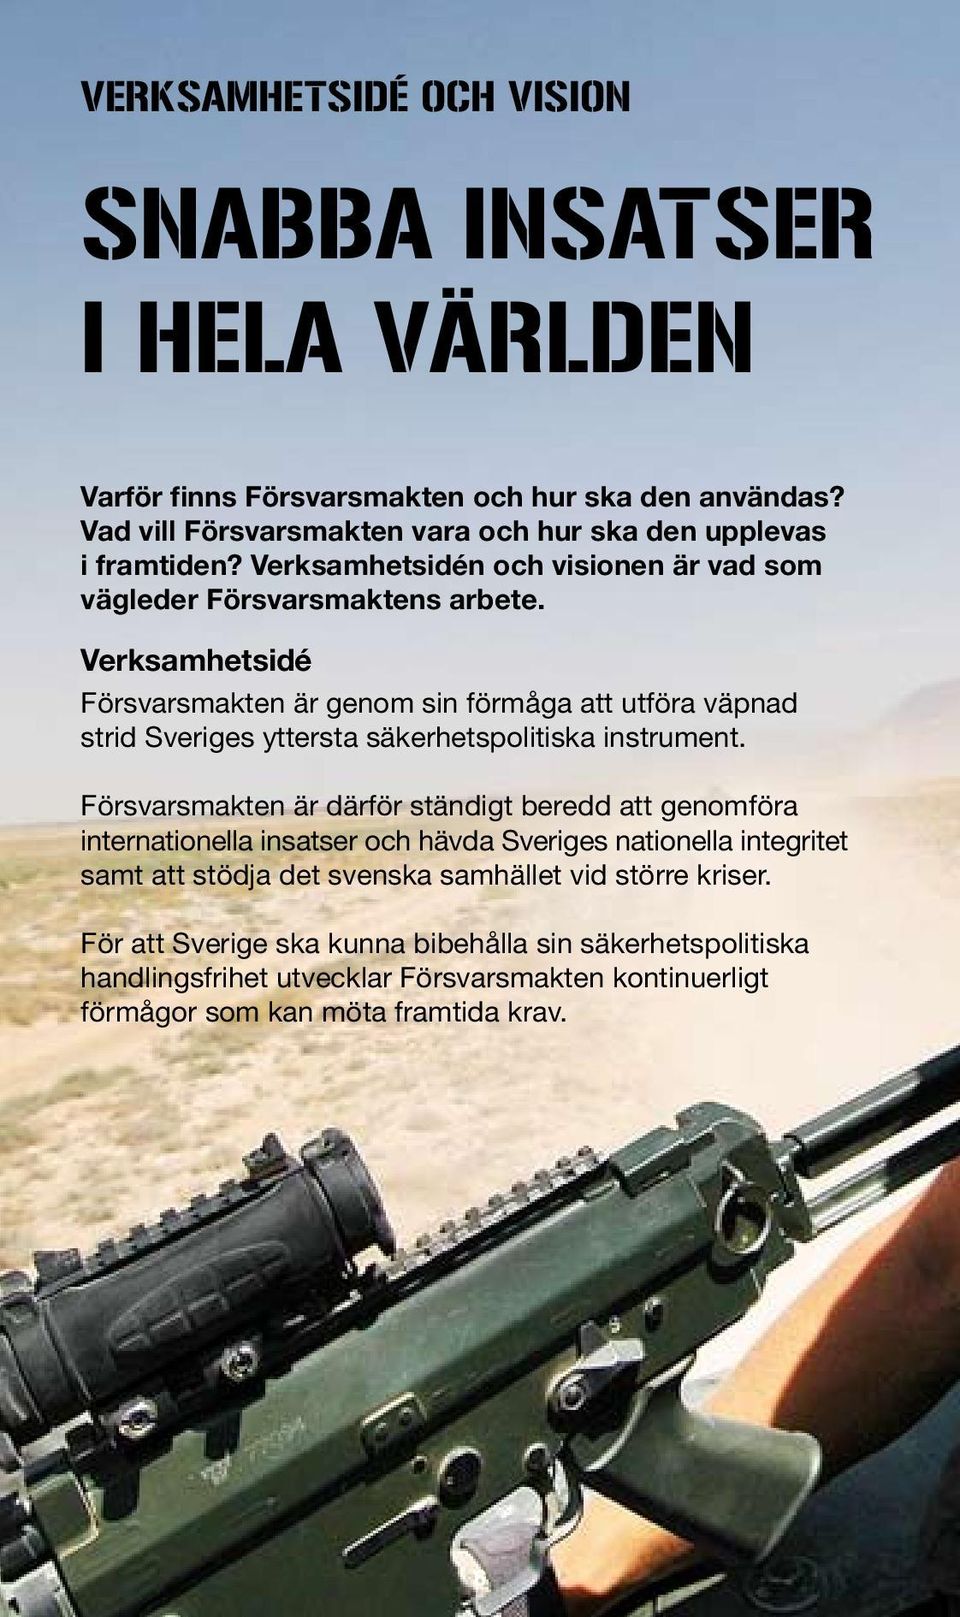 Verksamhetsidé Försvarsmakten är genom sin förmåga att utföra väpnad strid Sveriges yttersta säkerhetspolitiska instrument.